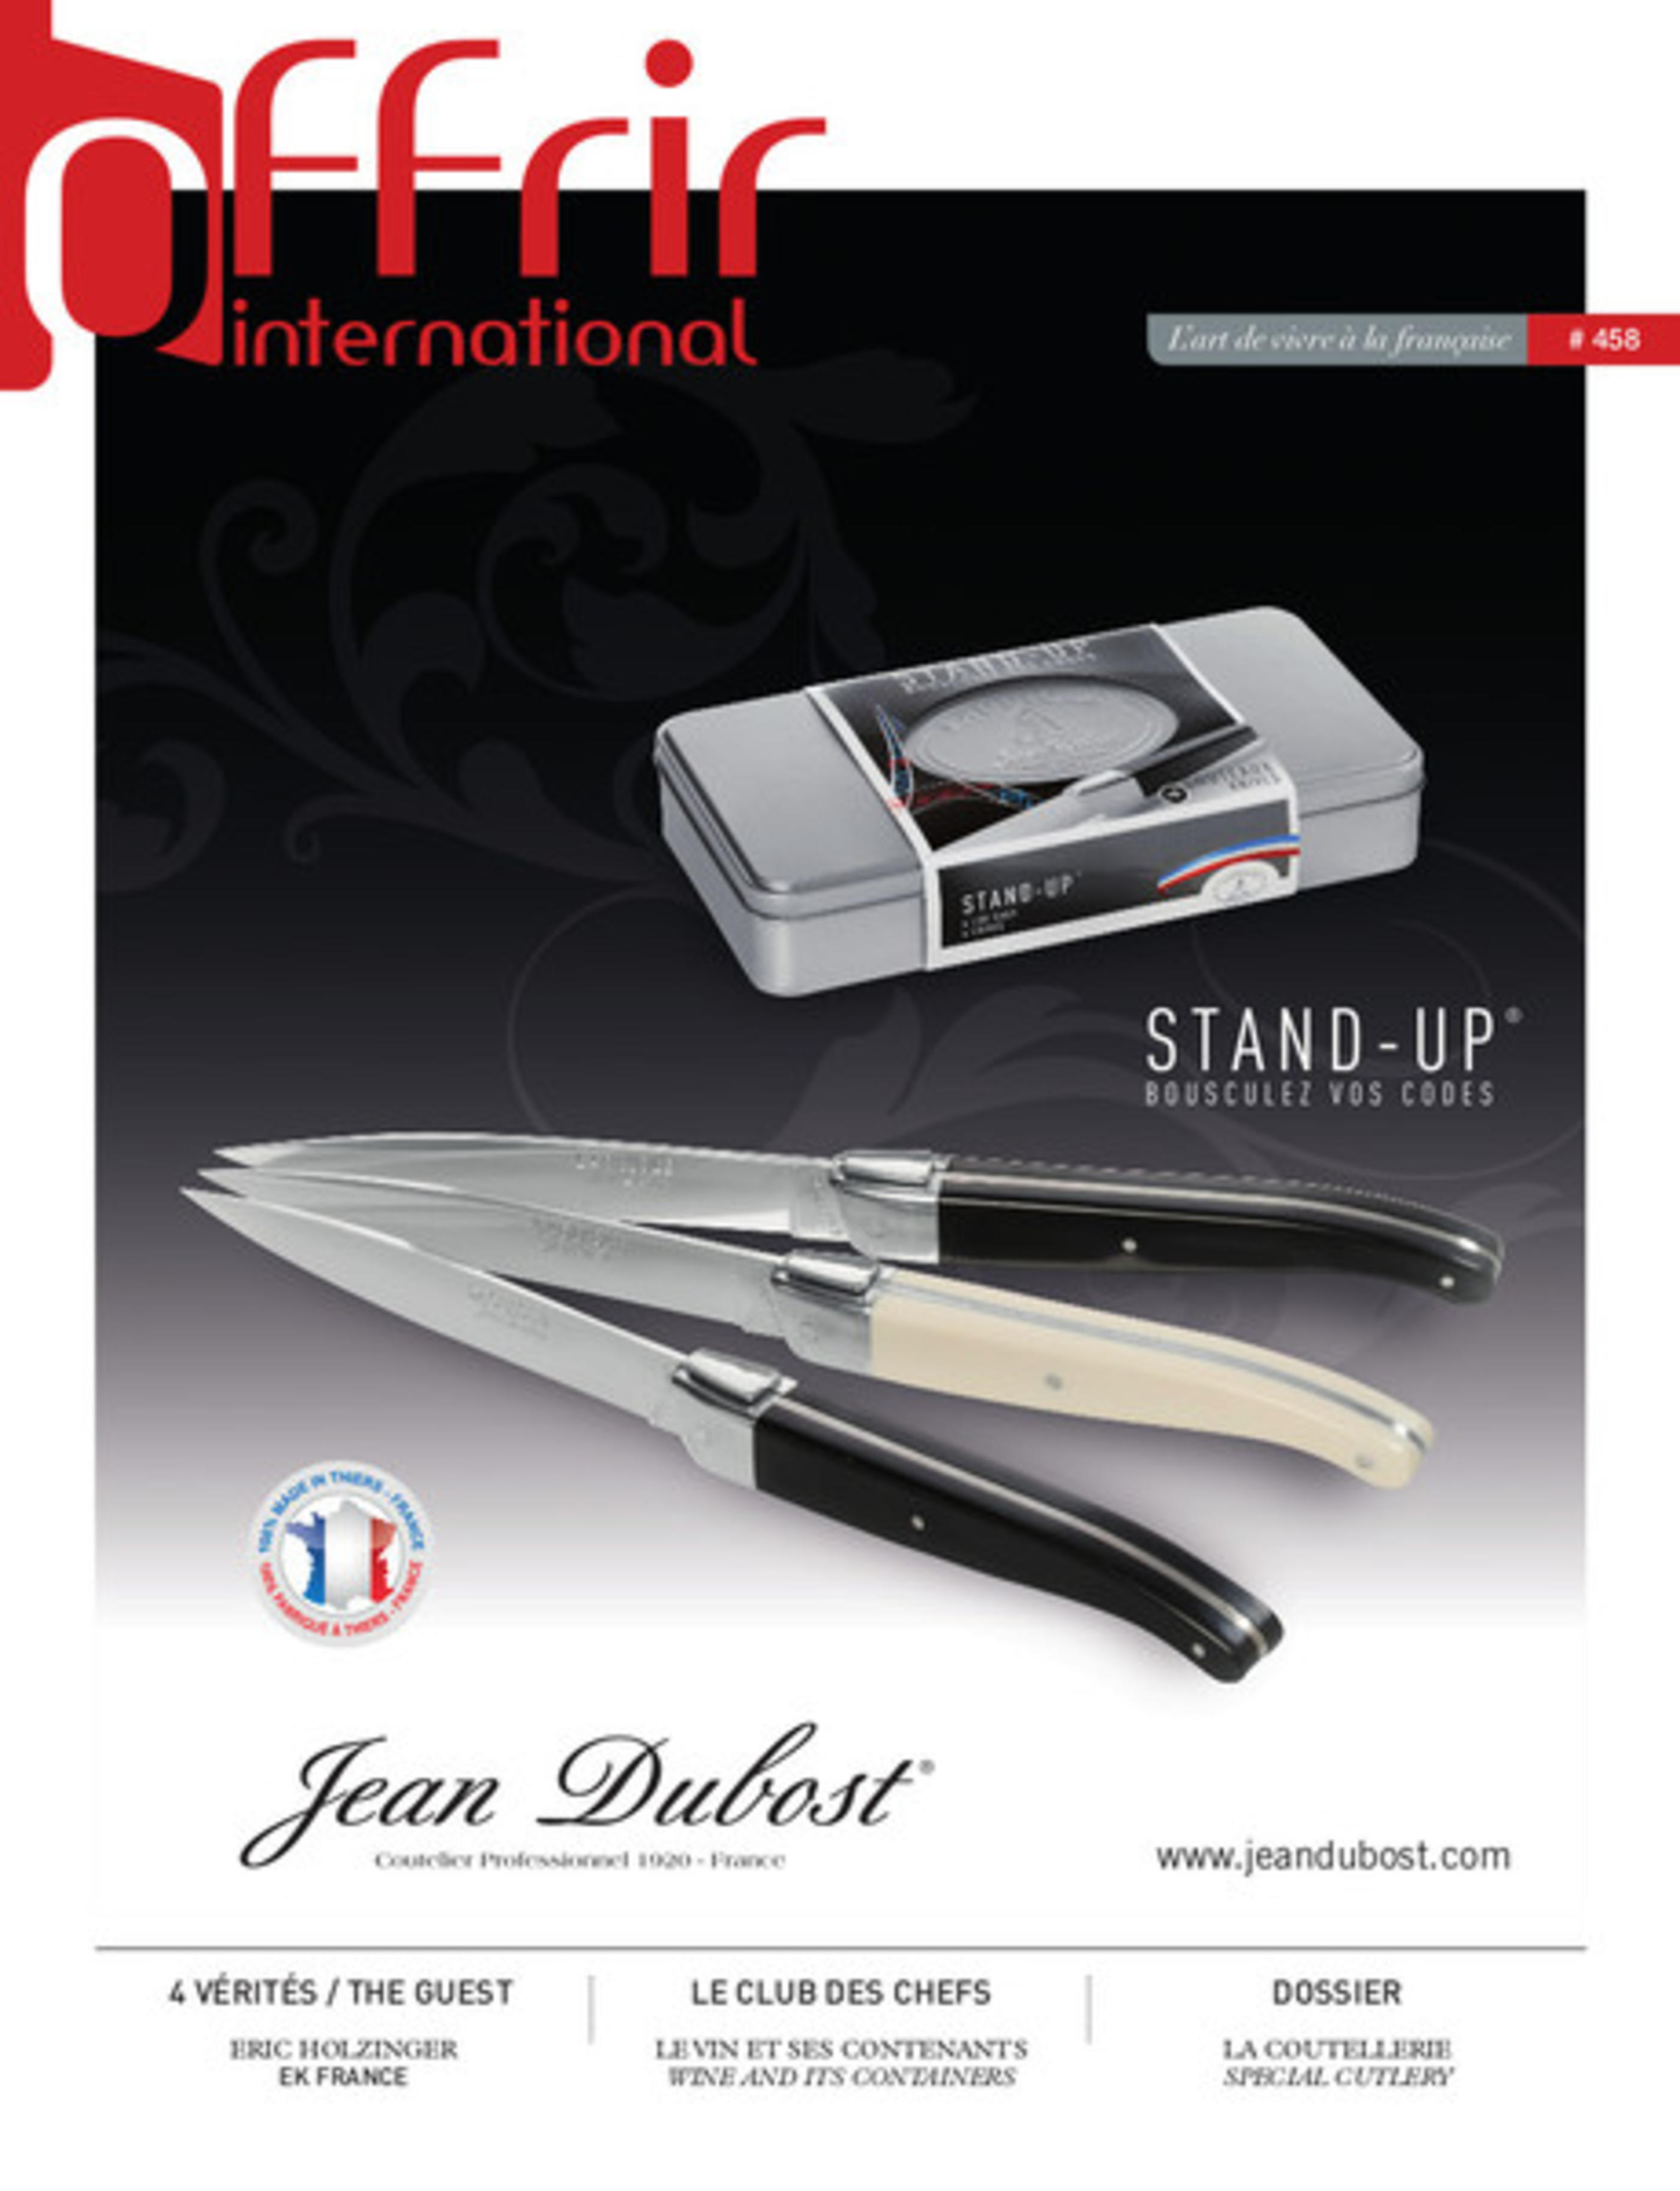 Les couteaux Christian Etchebest par Jean Dubost, Offrir International